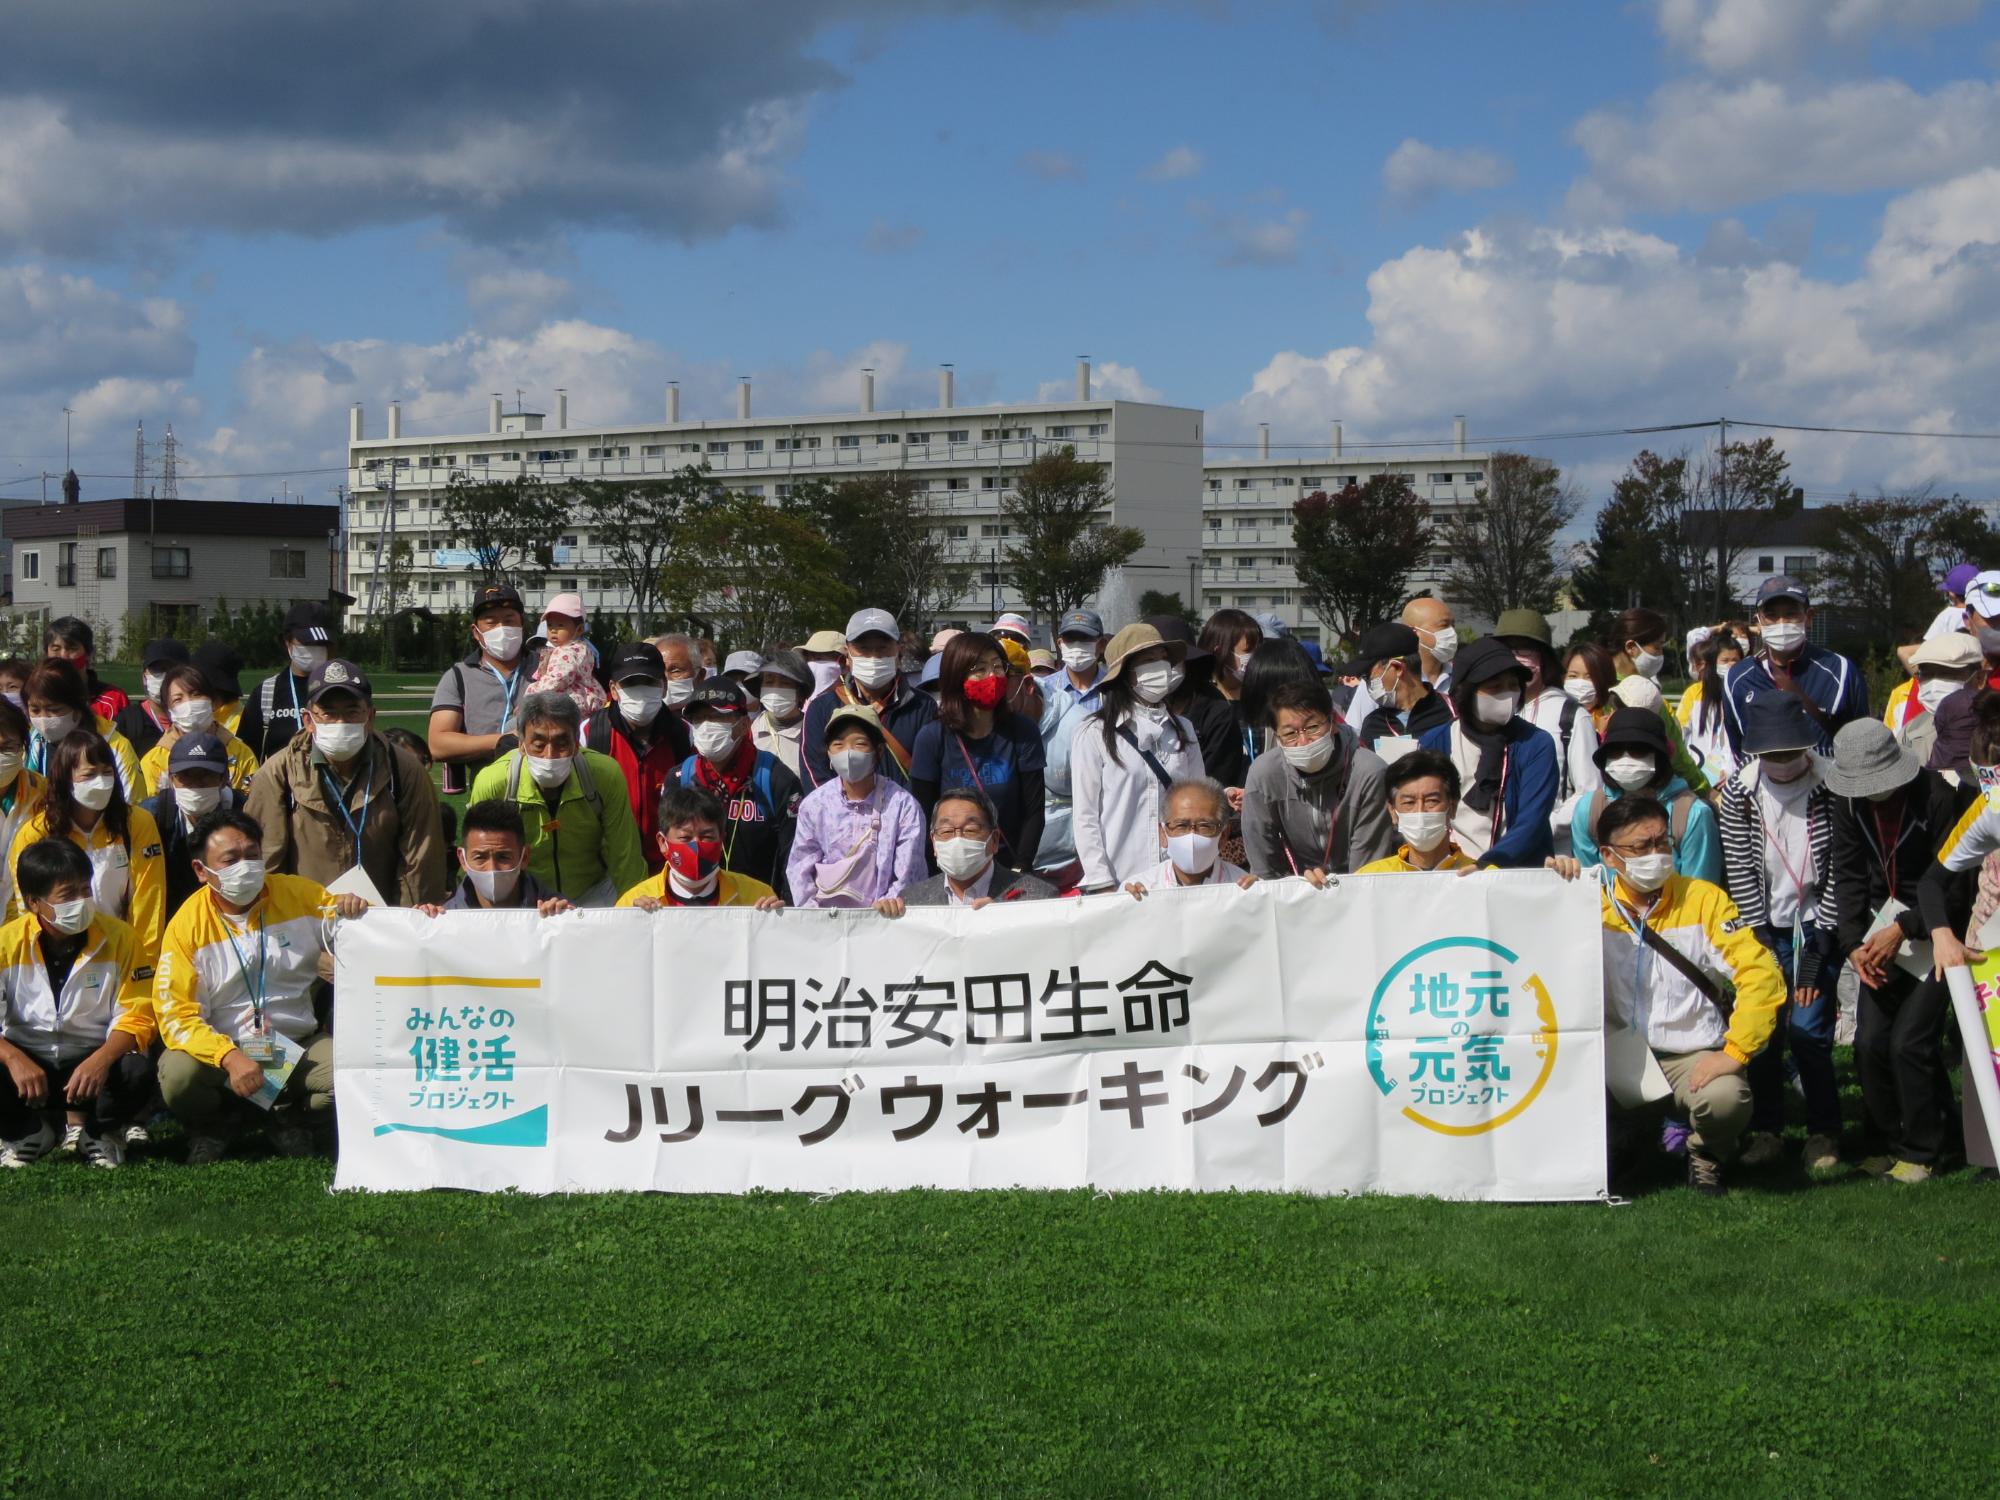 参加者と集合写真に写る原田市長